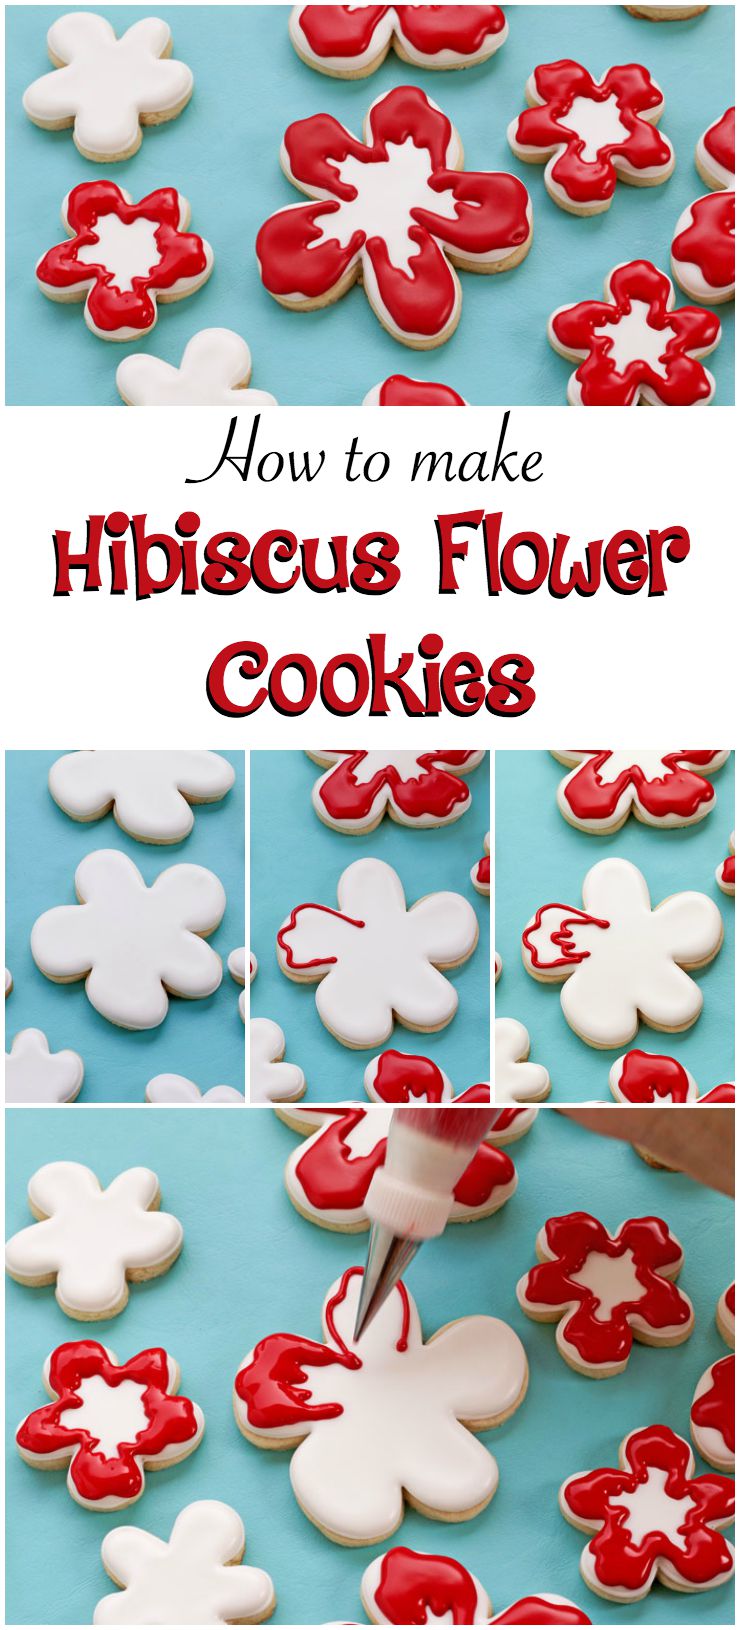 How to Make Fun Hibiscus Cookies via www.thebearfootbaker.com